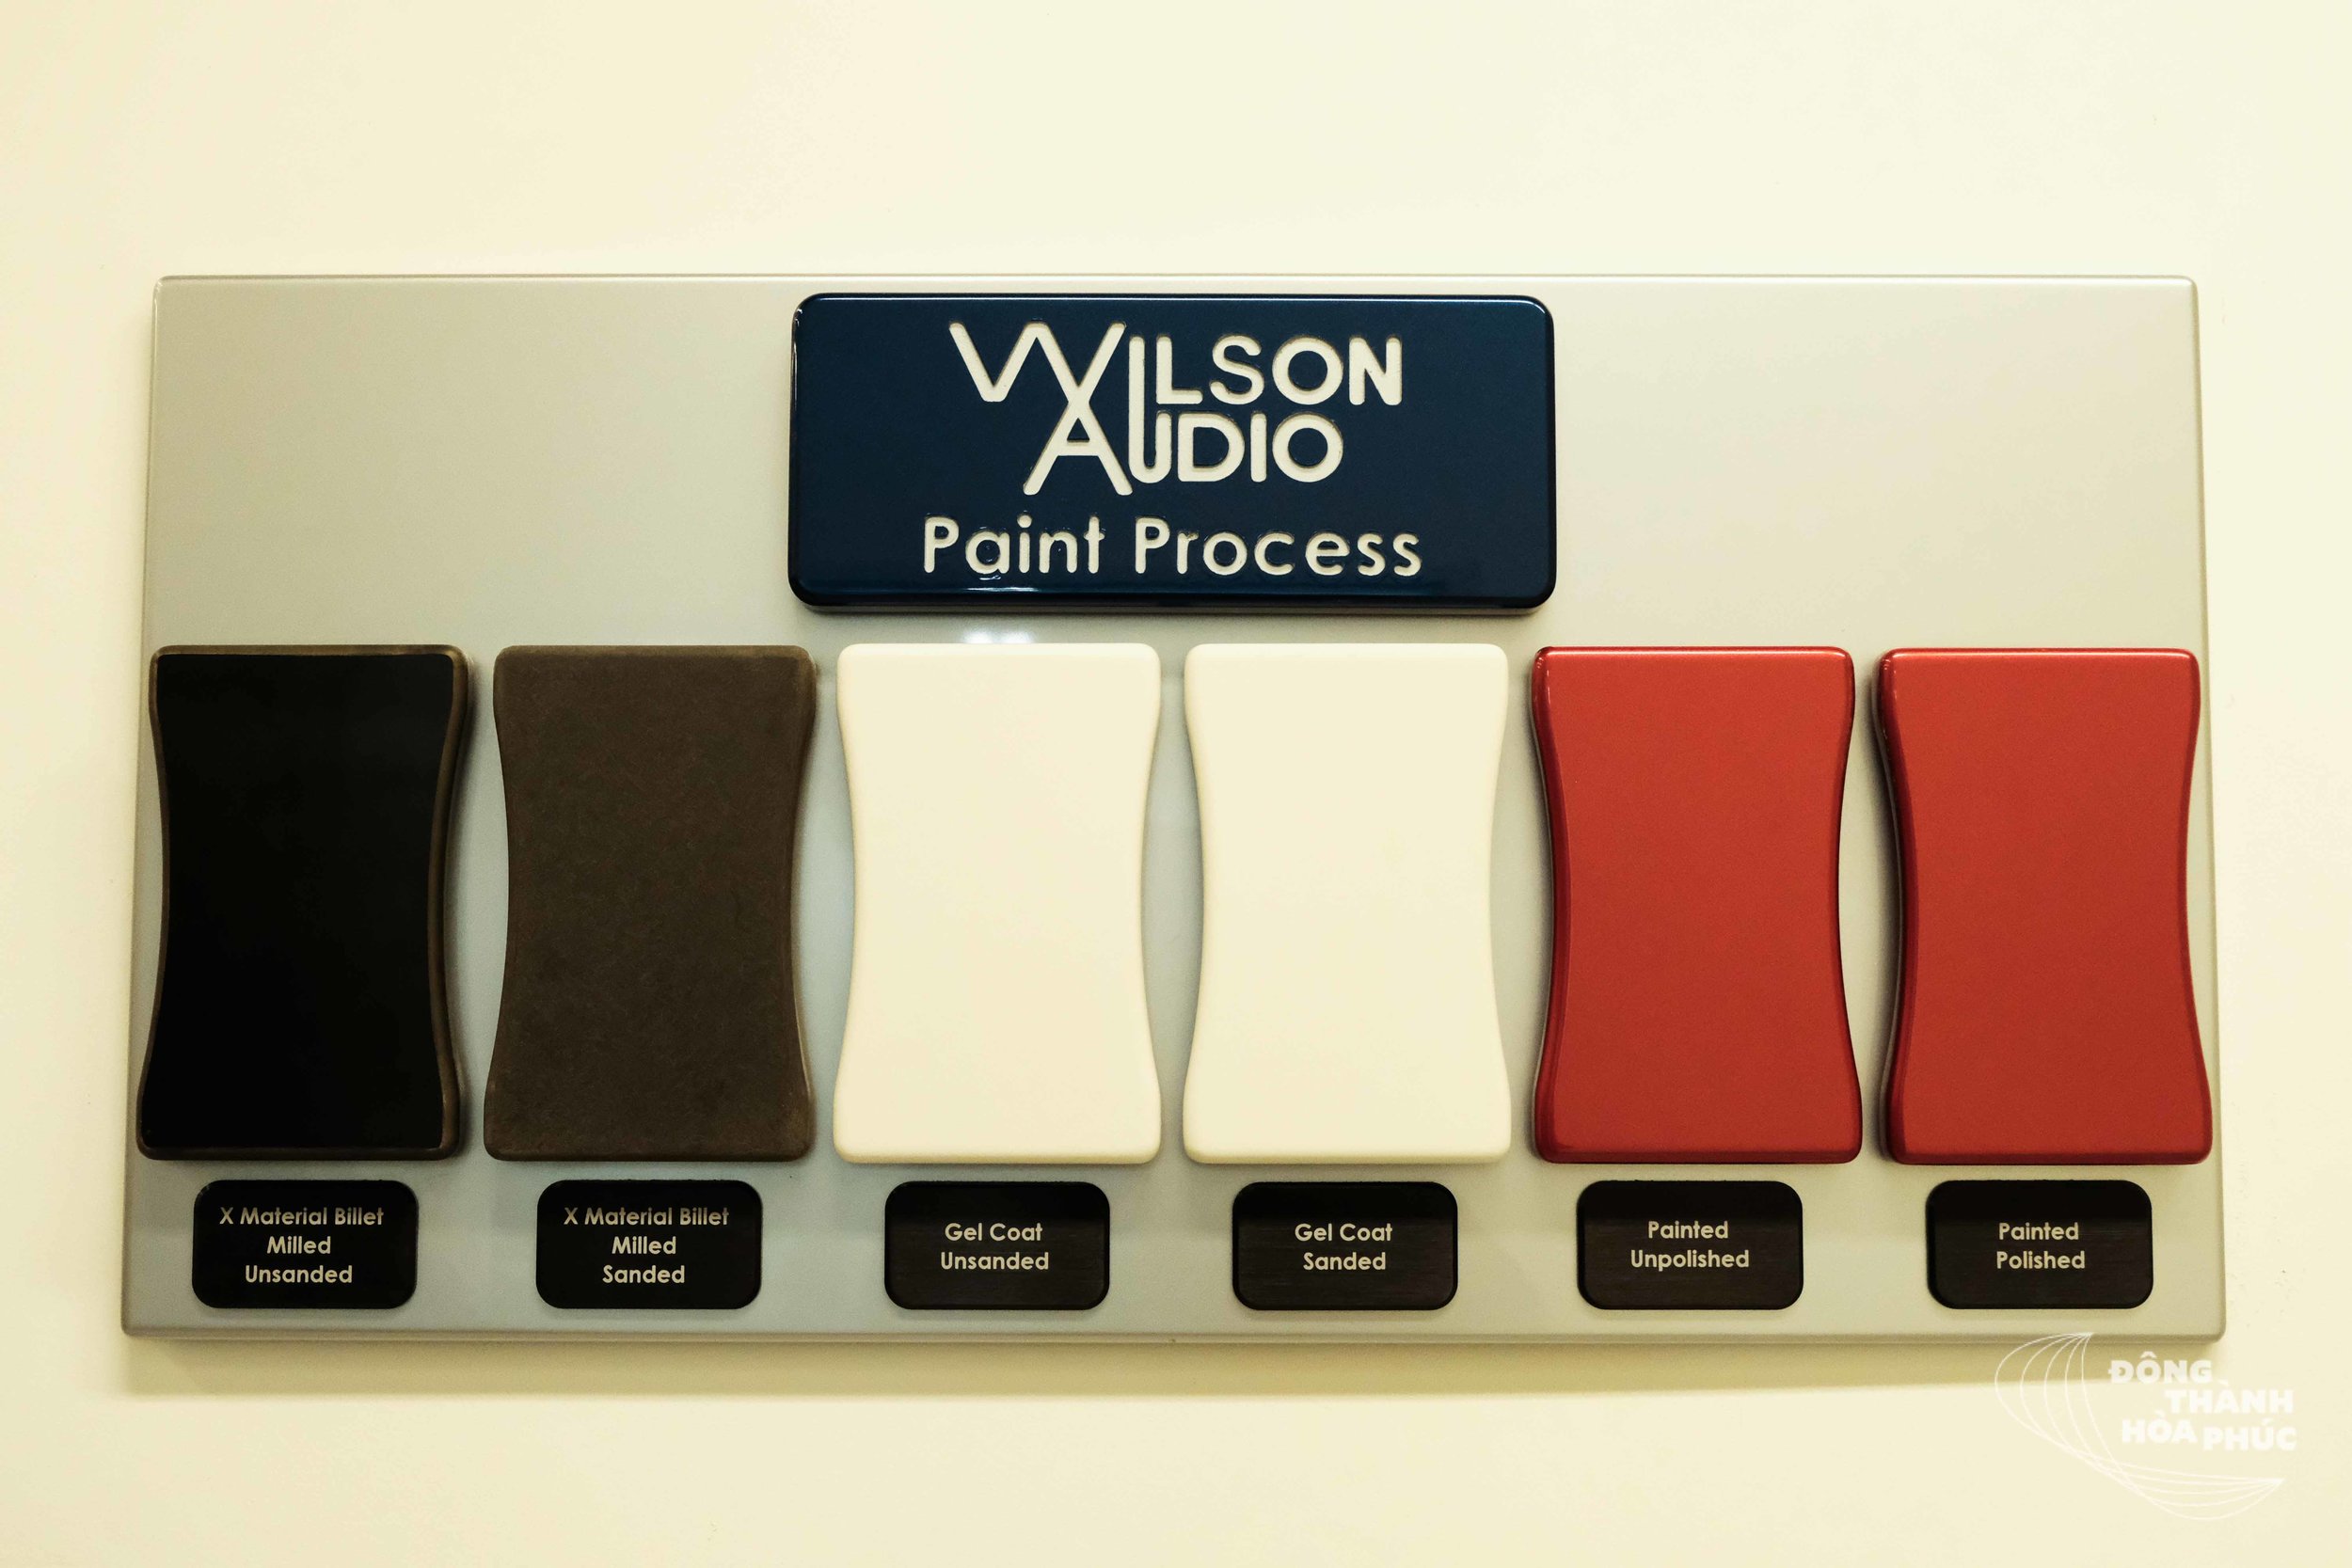 Quá trình sơn sản phẩm của Wilson Audio: thùng loa thô -&gt; mài -&gt; sơn phủ -&gt; đánh mượt -&gt; sơn màu -&gt; đánh bóng